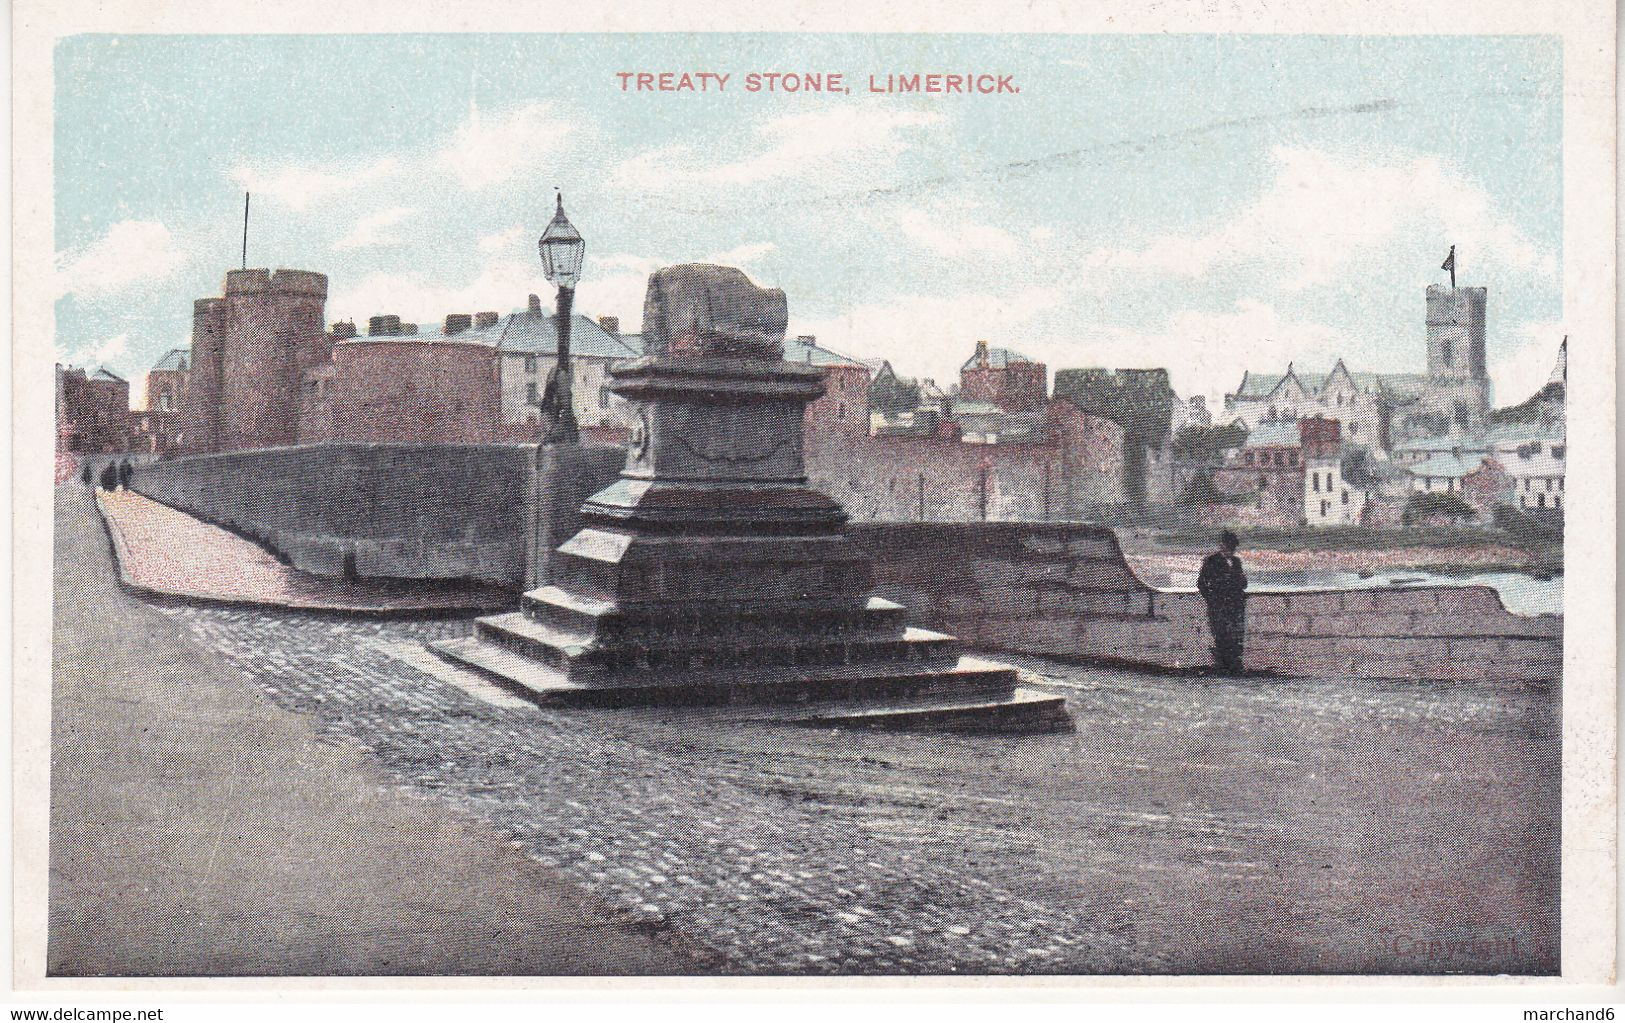 Ireland Treaty Stone , Limerick - Limerick